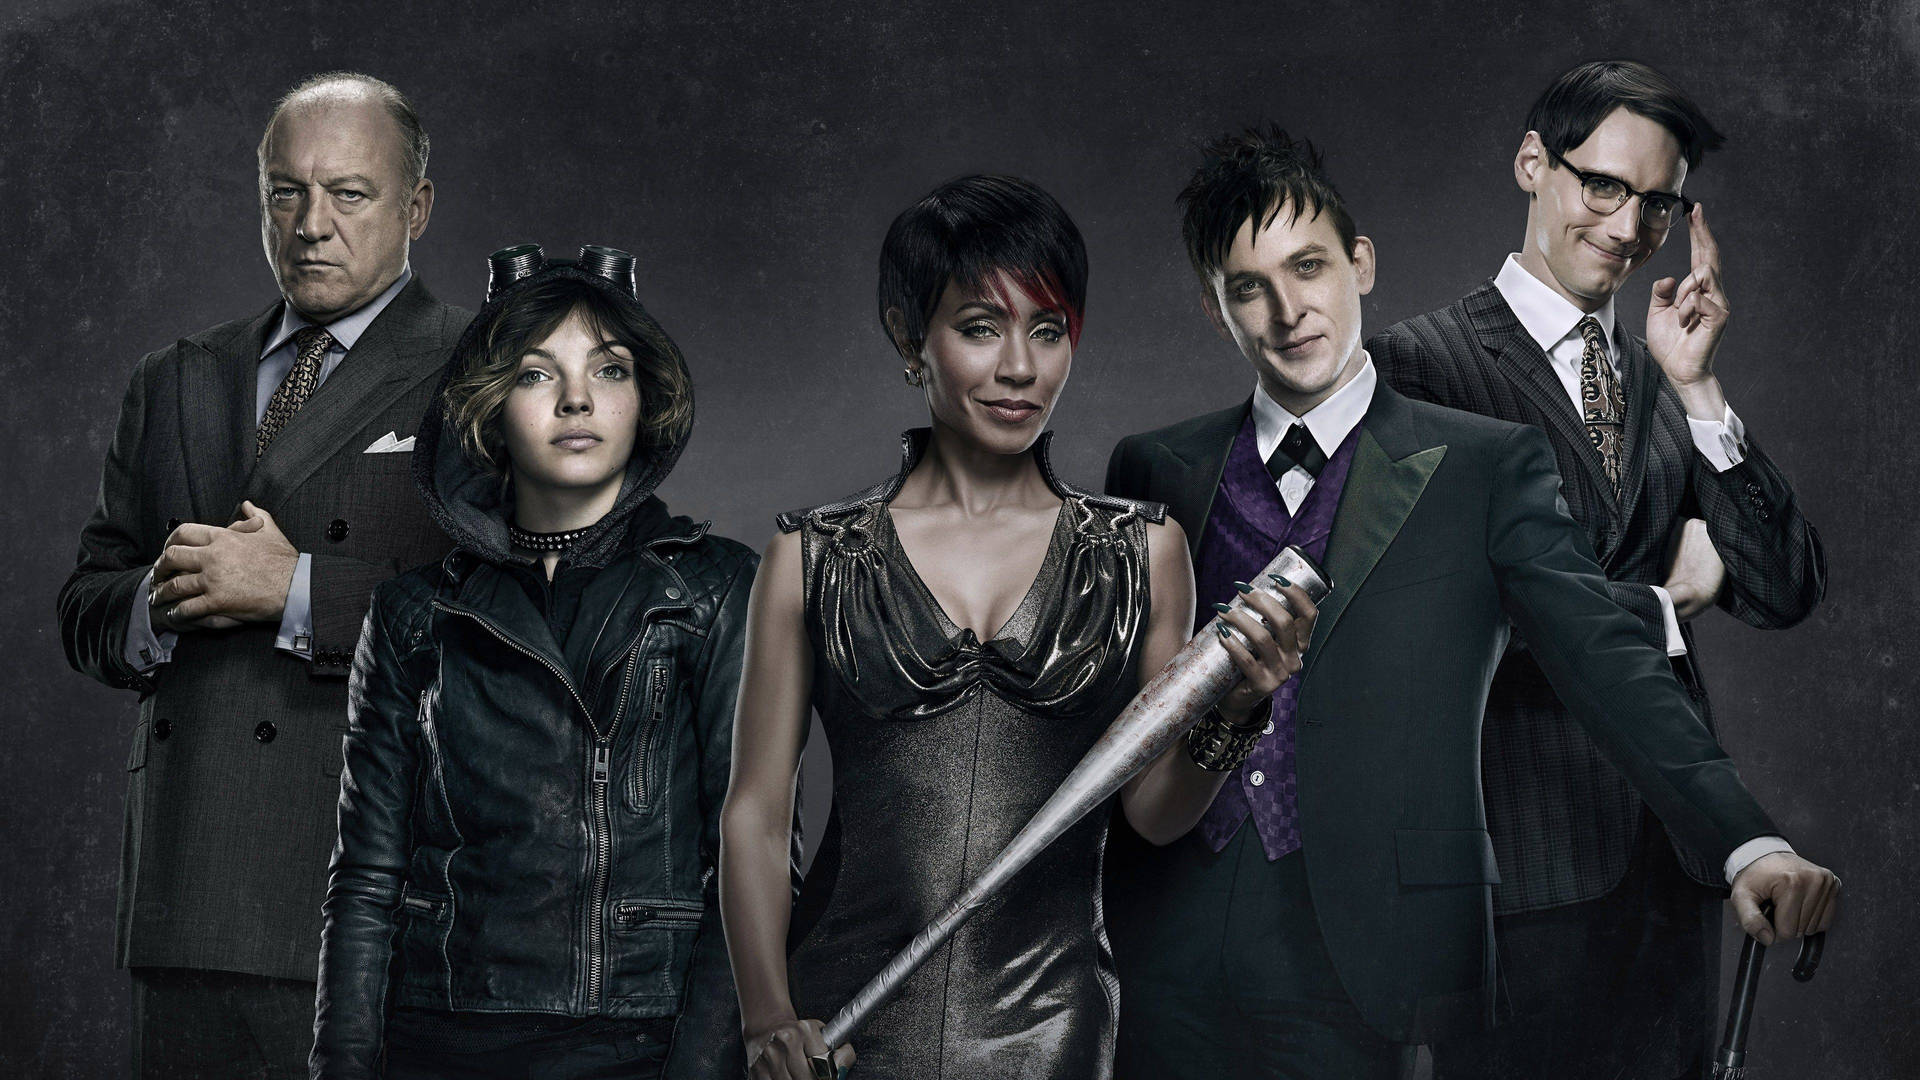 Gotham Villains Group Photograph Wallpaper